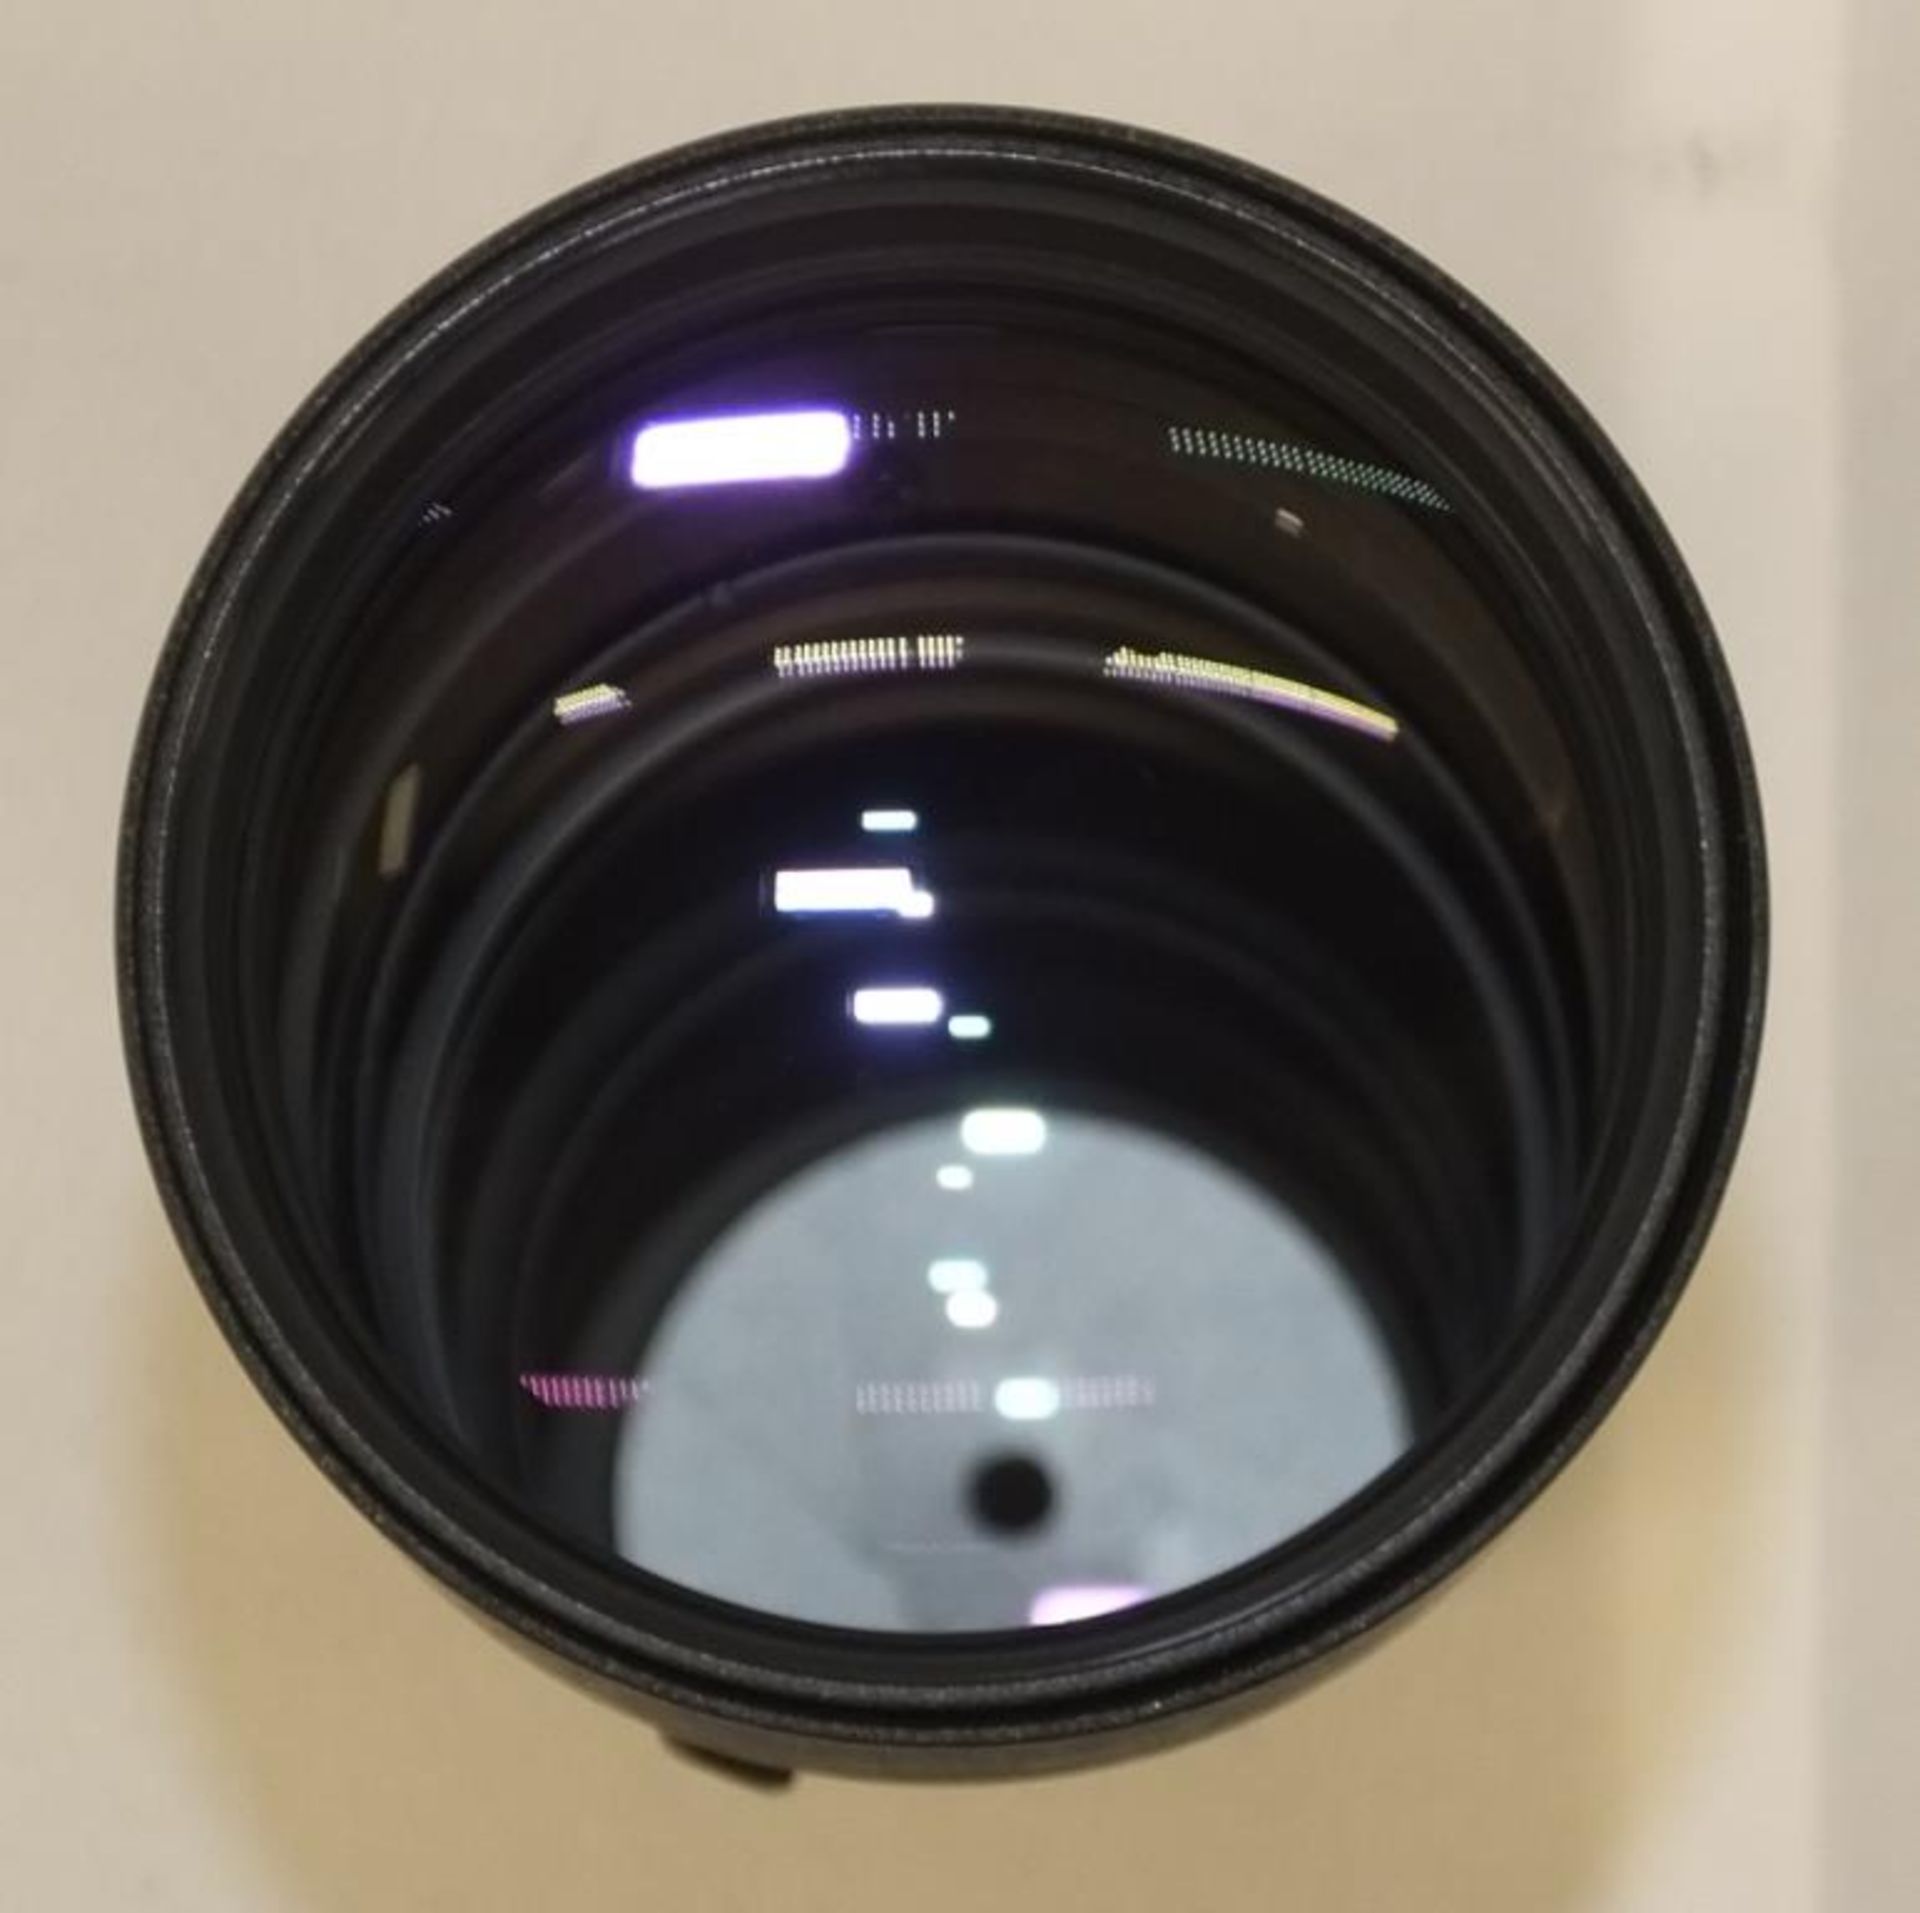 Nikon ED AF Nikkor 300mm - 1:4 Lens - Serial No. 201945 with HOYA 82mm UV(O) Filter in Nikon case - Image 5 of 8